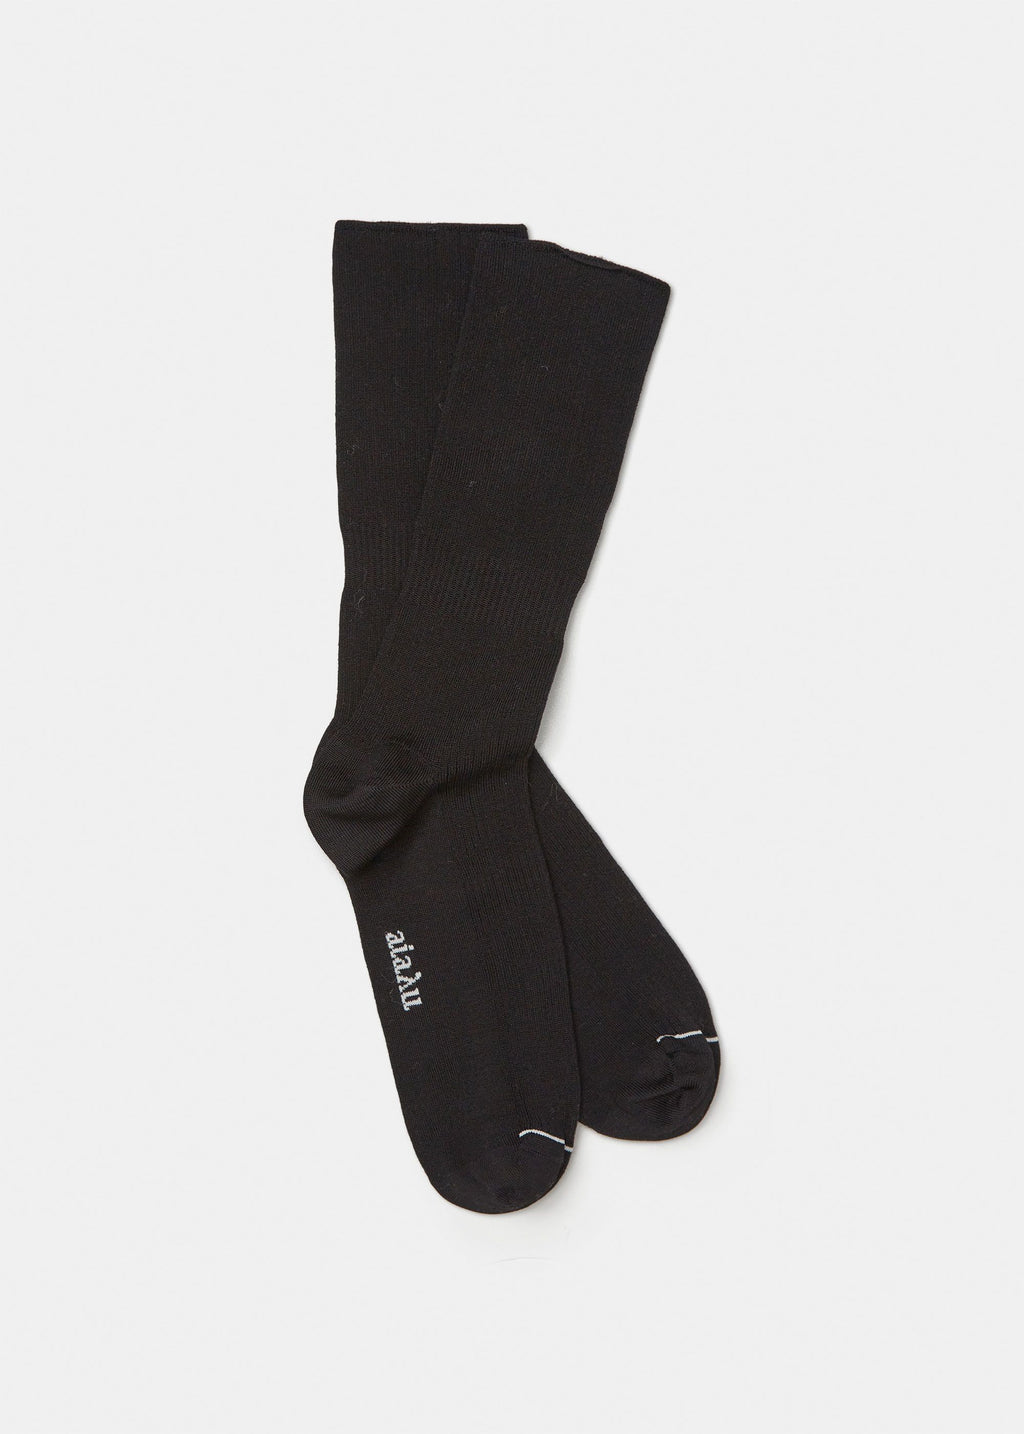 Cotton Rib Socks / Black